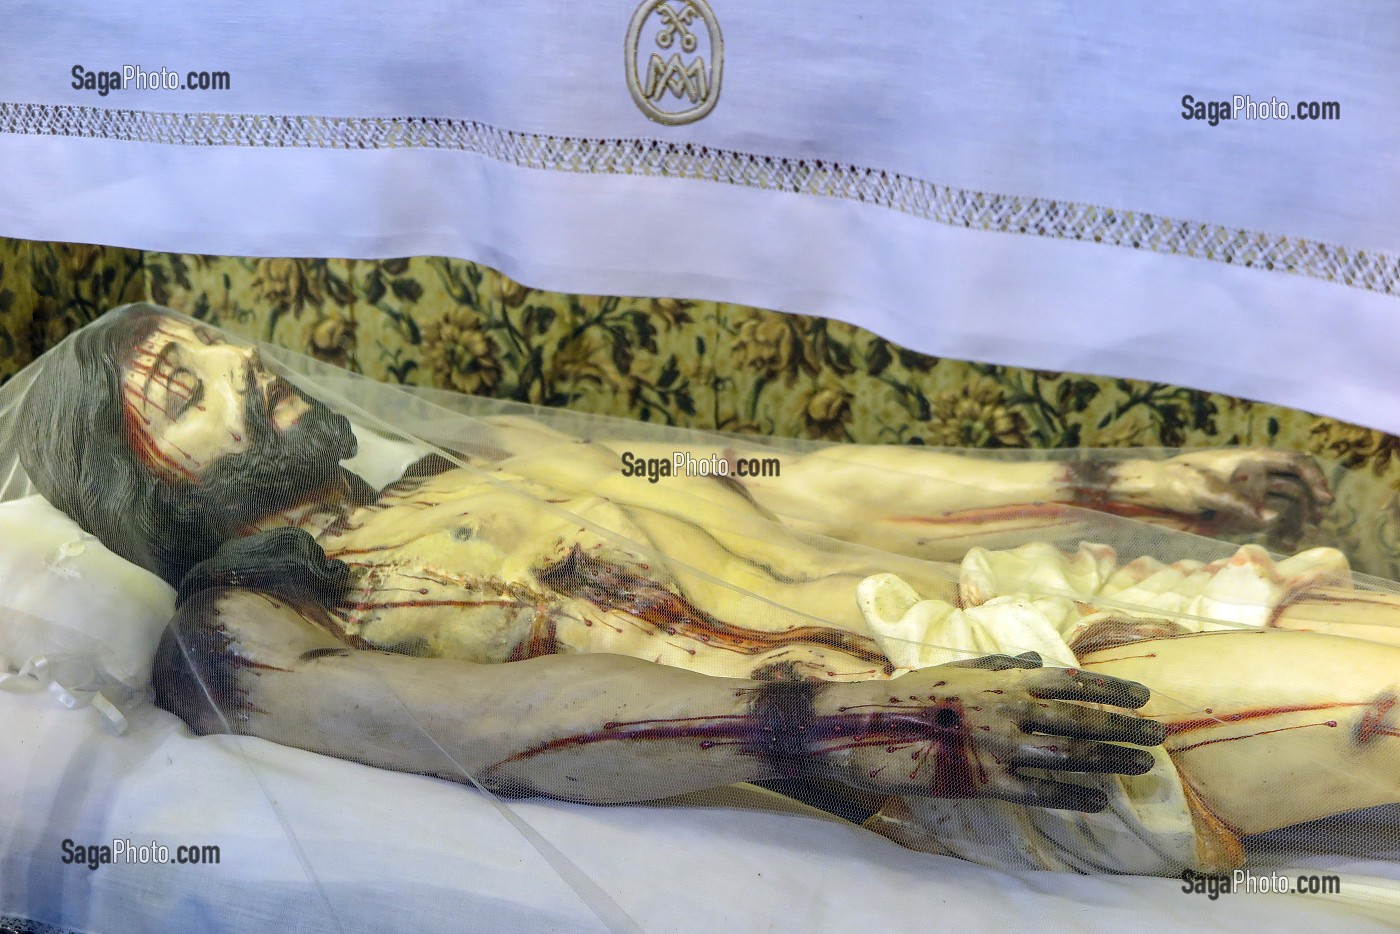 CHRIST MORT ENSANGLANTE DANS SON LINCEUL, EGLISE DOS CLERIGOS, PORTO, PORTUGAL 